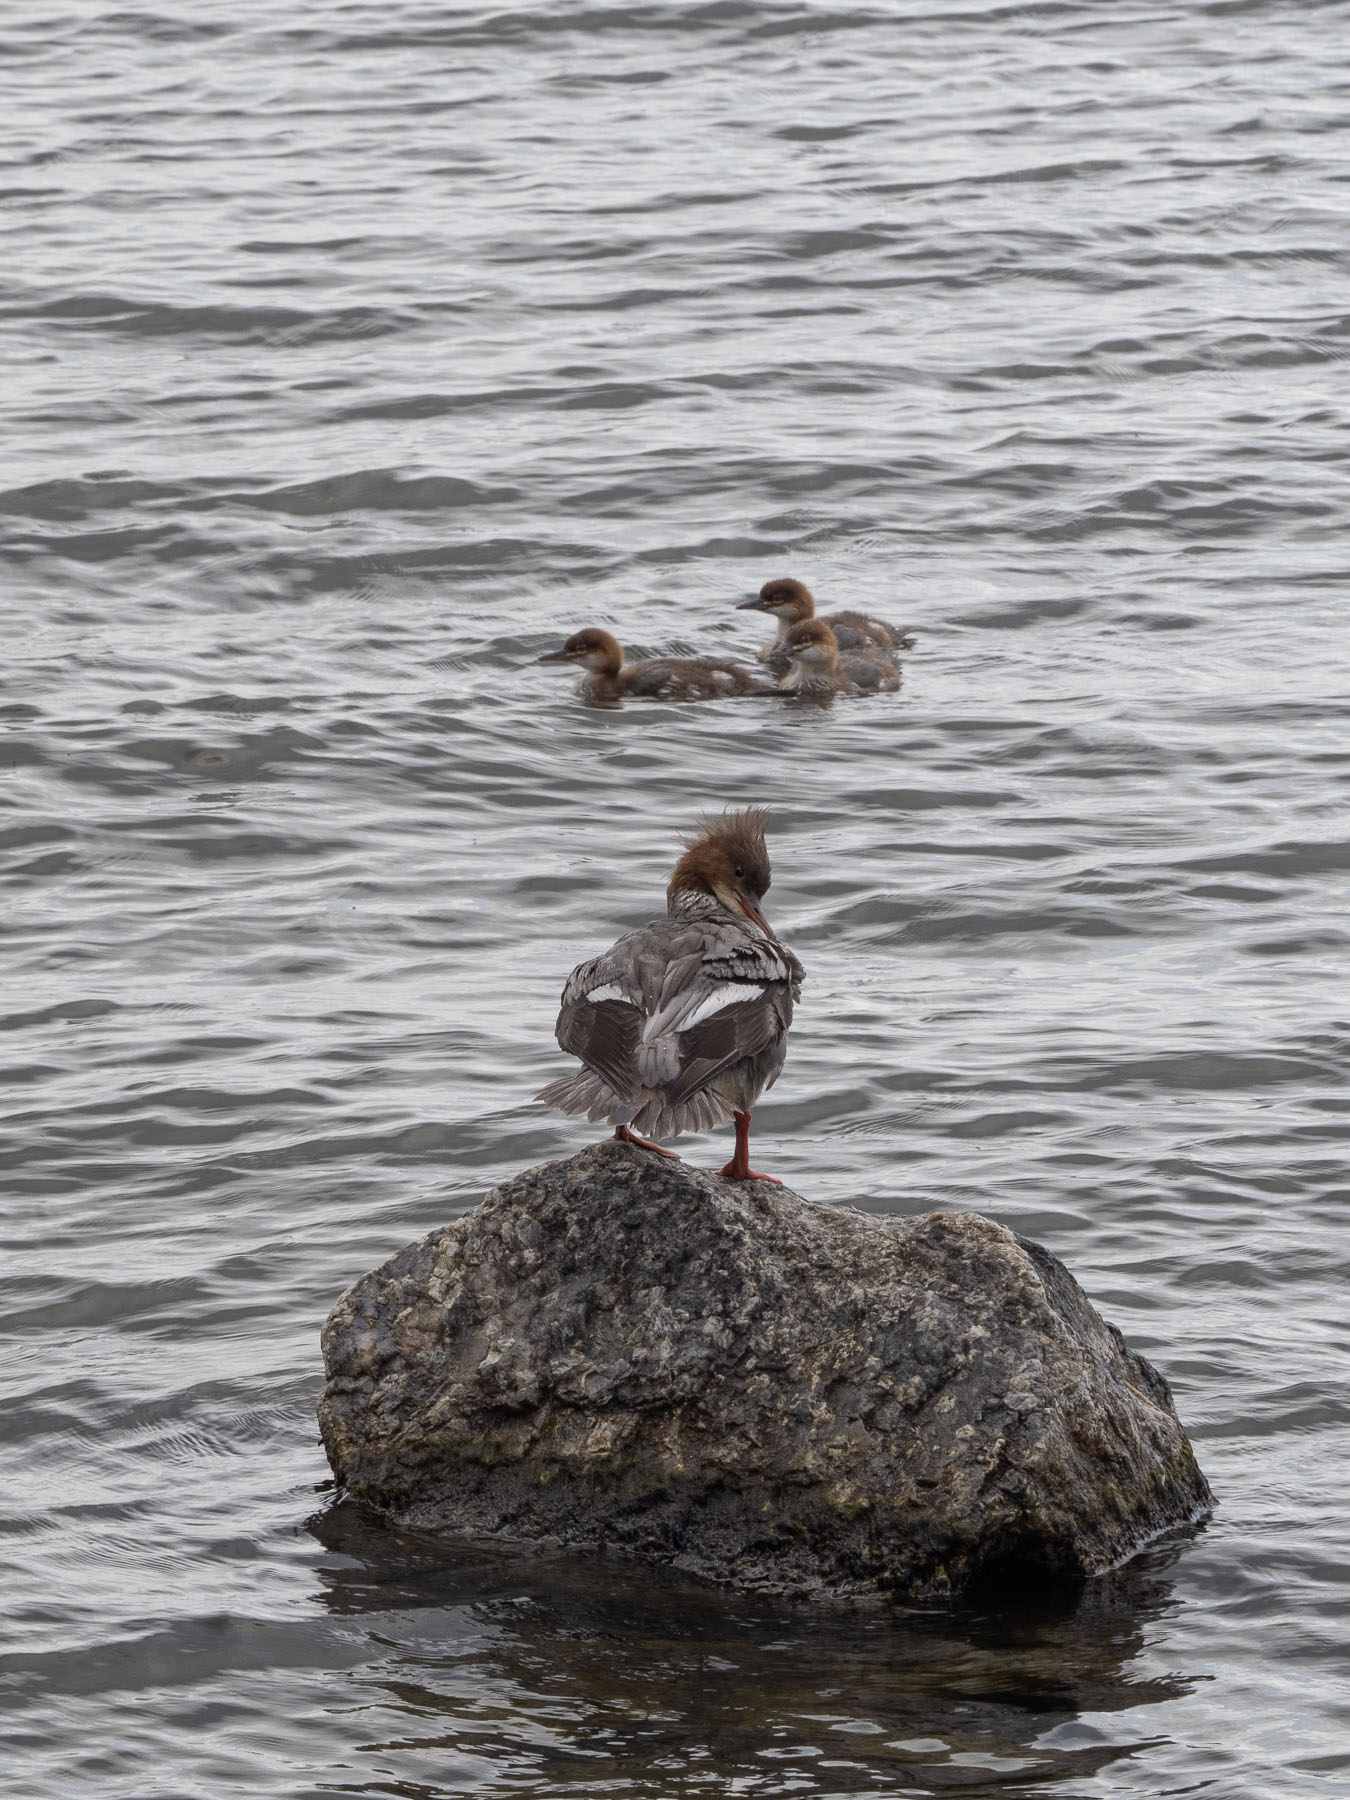 Большой крохаль (Mergus merganser)Большой крохаль (Mergus merganser).
Самка с птенцами на берегу озера M?laren, Стокгольм. Июль 2020 года. Автор фото: Сутормина Марина